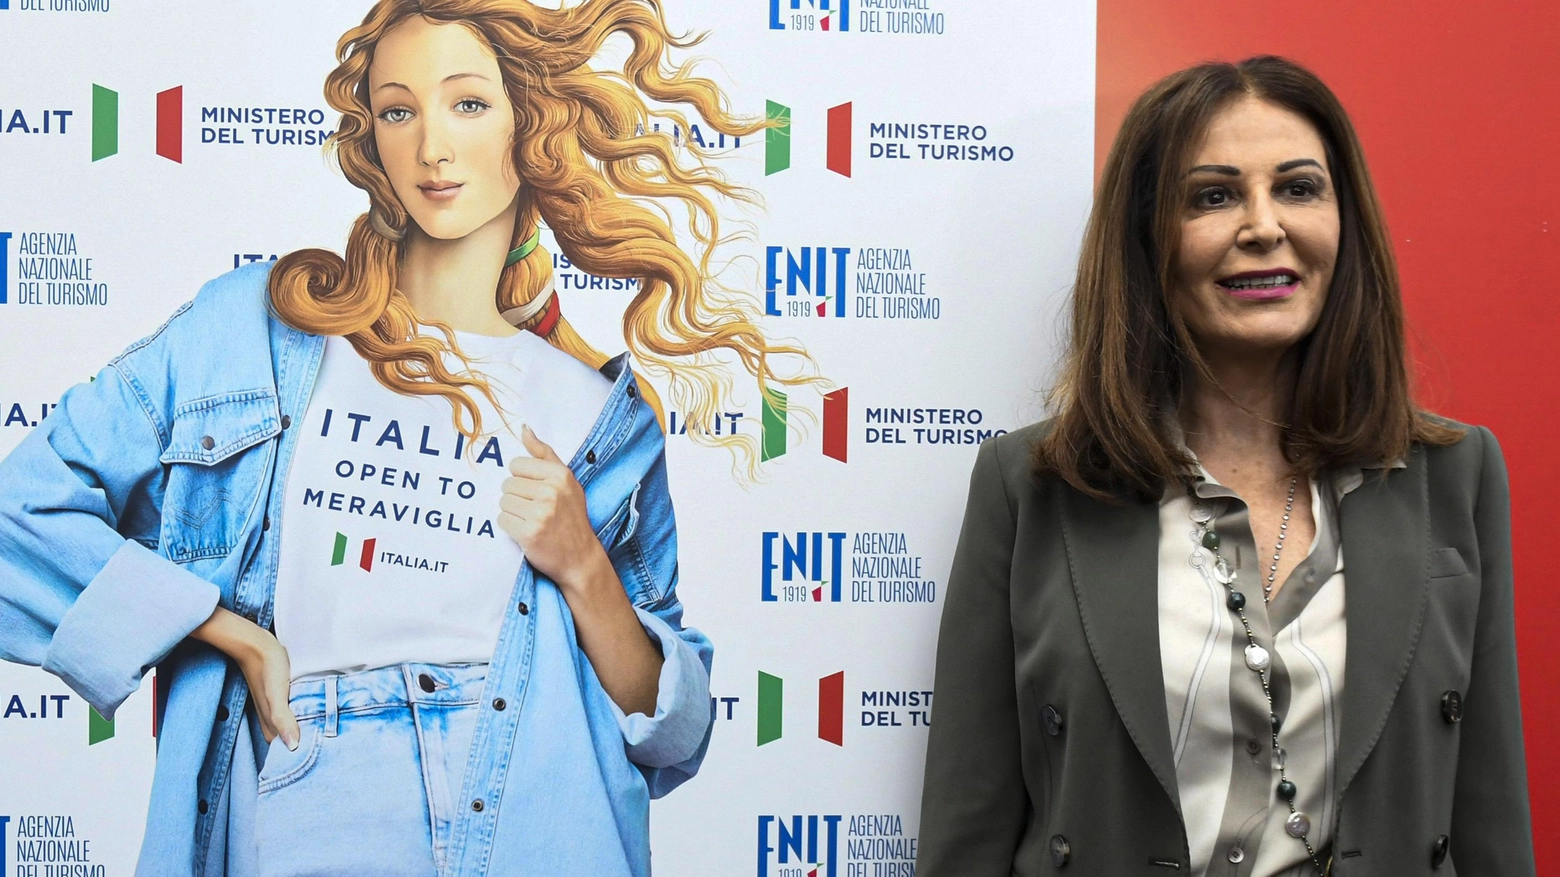 Arte, marketing e turismo  Venere diventa influencer  La campagna spacca l’Italia